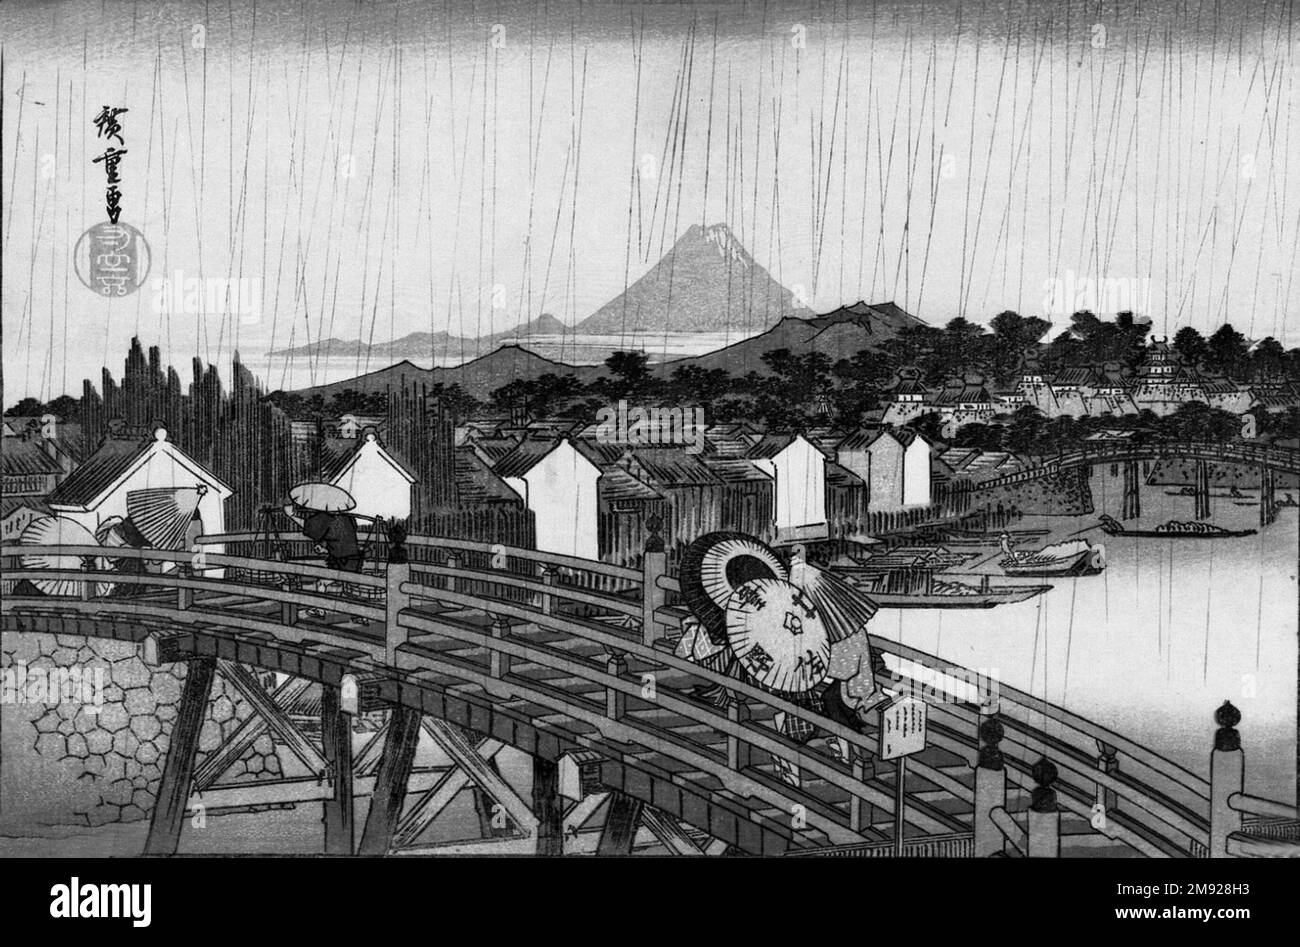 Dusche auf der Nihonbashi Bridge, aus der Reihe berühmter Orte in der östlichen Hauptstadt Utagawa Hiroshige (Ando) (Japanisch, 1797-1858). Dusche auf der Nihonbashi Bridge, aus der Reihe berühmter Orte in der östlichen Hauptstadt, ca. 1832. Farbiger Holzblockdruck auf Papier, 10 5/16 x 15 1/4in. (26,2 x 38,7cm). Aufgrund ihrer Menge und Verfügbarkeit spielten japanische Farbmuster aus Holzblöcken eine besonders wichtige Rolle bei der Förderung Japonisms. Dieses Werk veranschaulicht einige der formalen Merkmale, die westliche Künstler so erfrischend anders fanden: Kompositionen mit starken Diagonalen oder asymmetrischen Anordnungen, Stockfoto